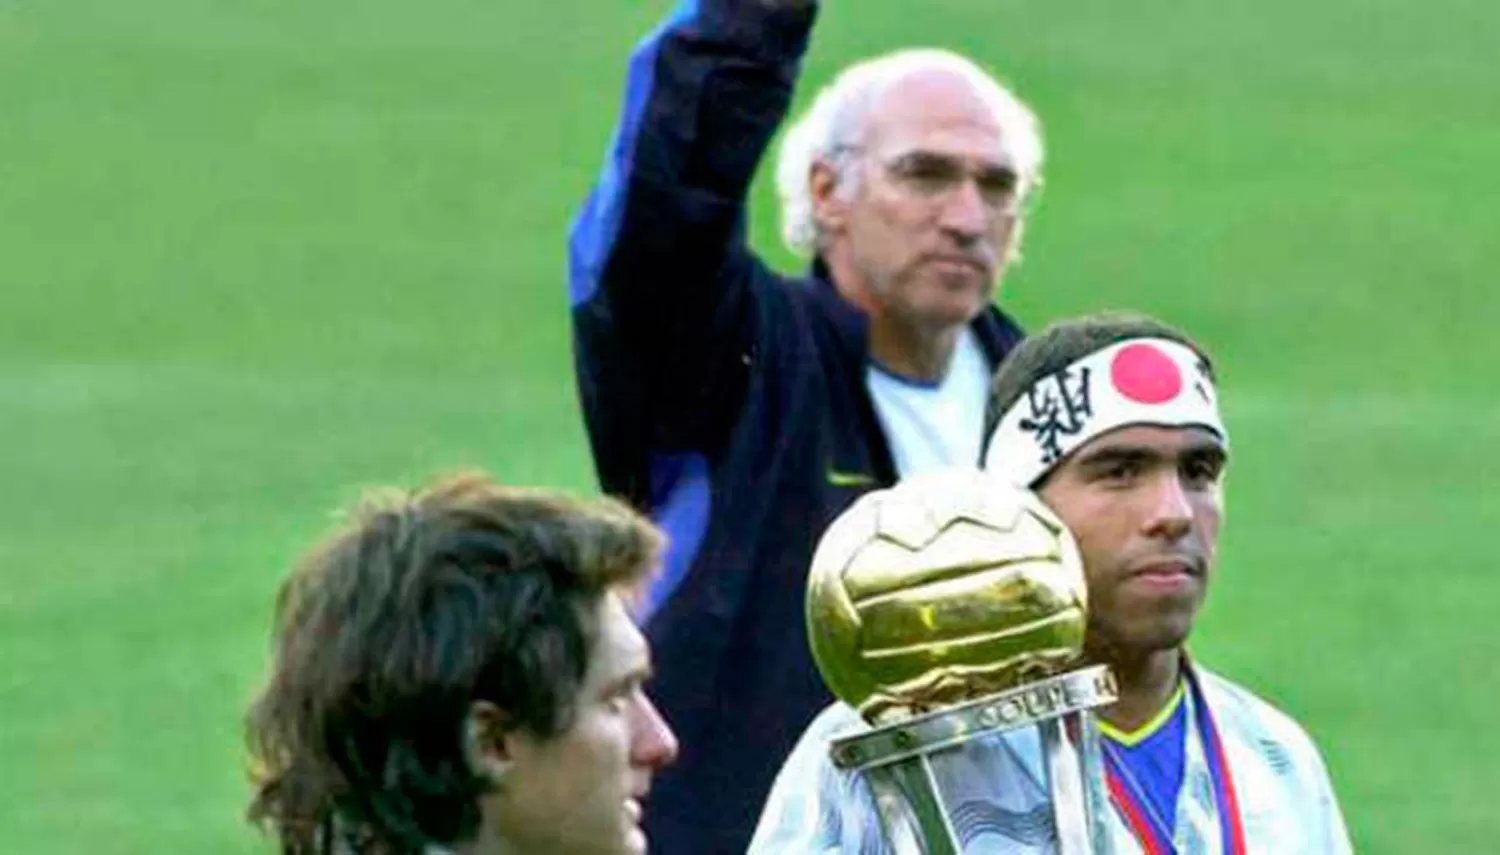 ÚLTIMOS CAMPEONES. Bianchi, Guillermo y Tevez, integraban el plantel de Boca campeón del mundo en 2003.